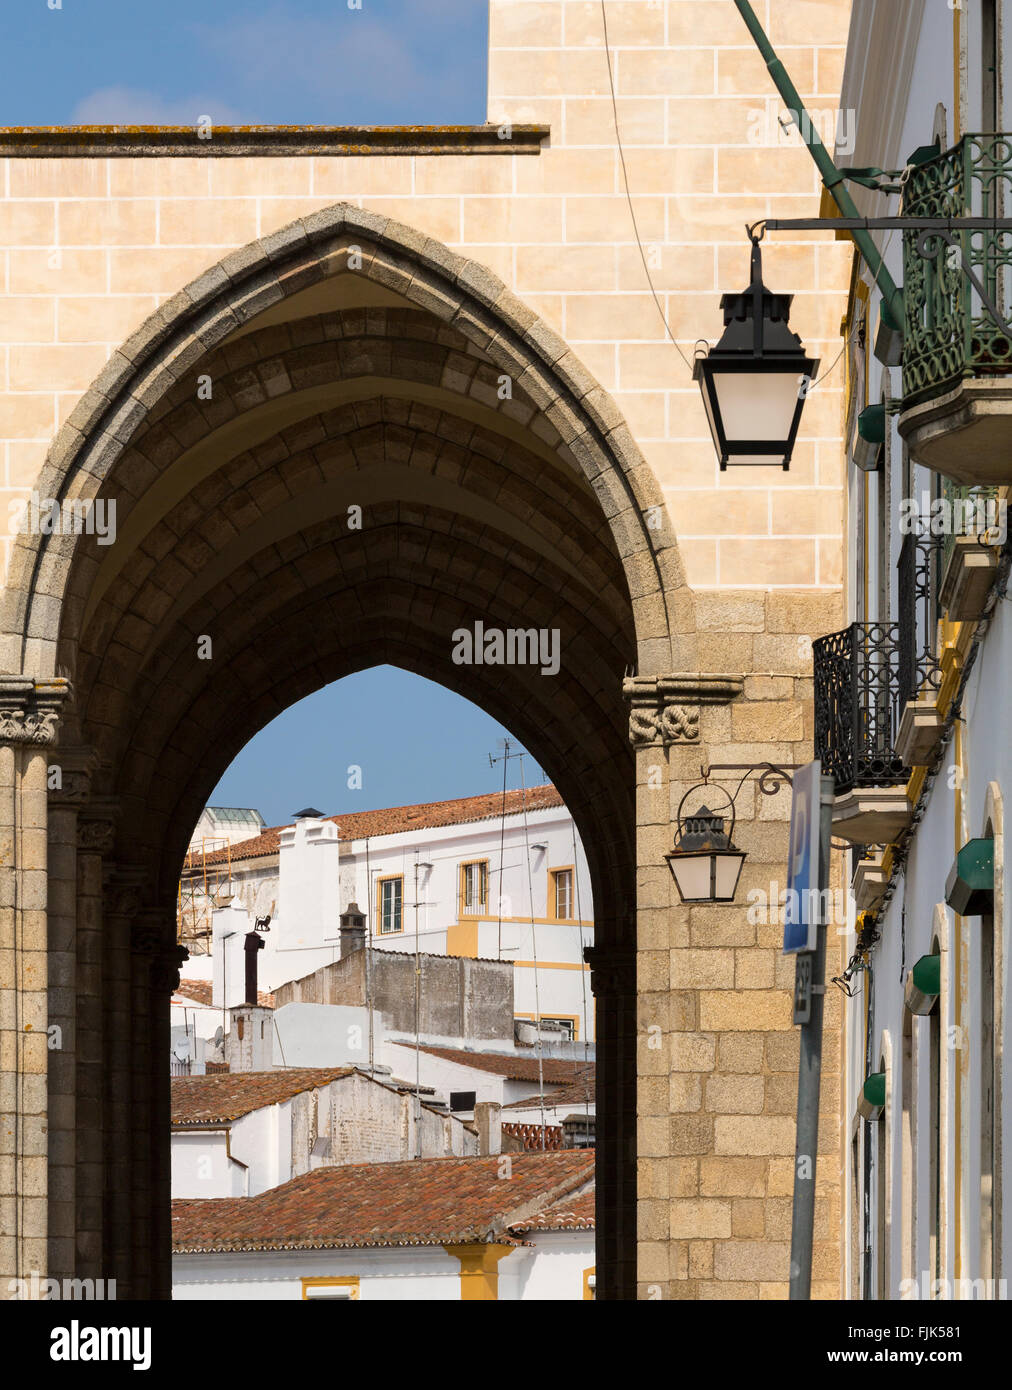 L'architecture typique et vue de ville via archway, Evora, Alentejo, Portugal Banque D'Images